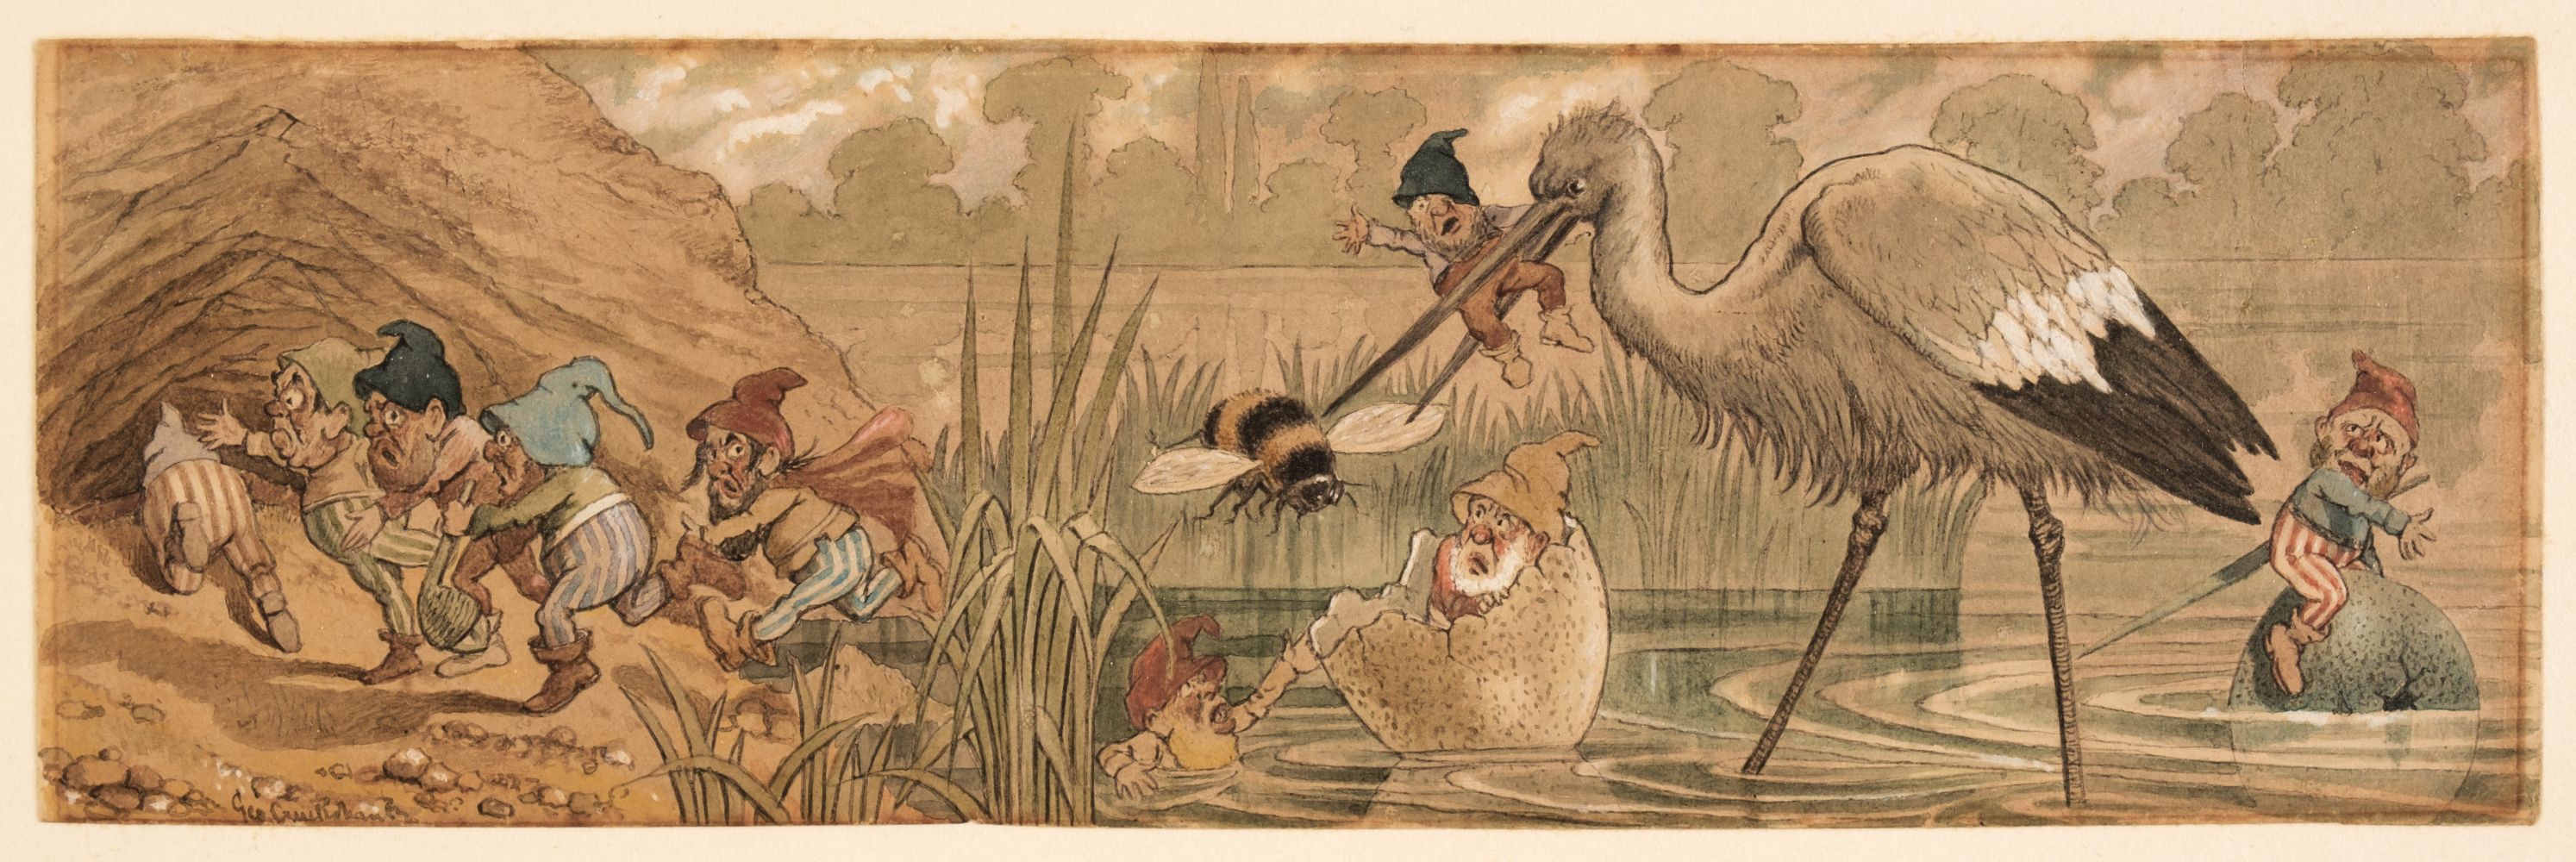 Cruikshank (George, 1792-1878). A fantasy scene of dwarves fleeing a heron